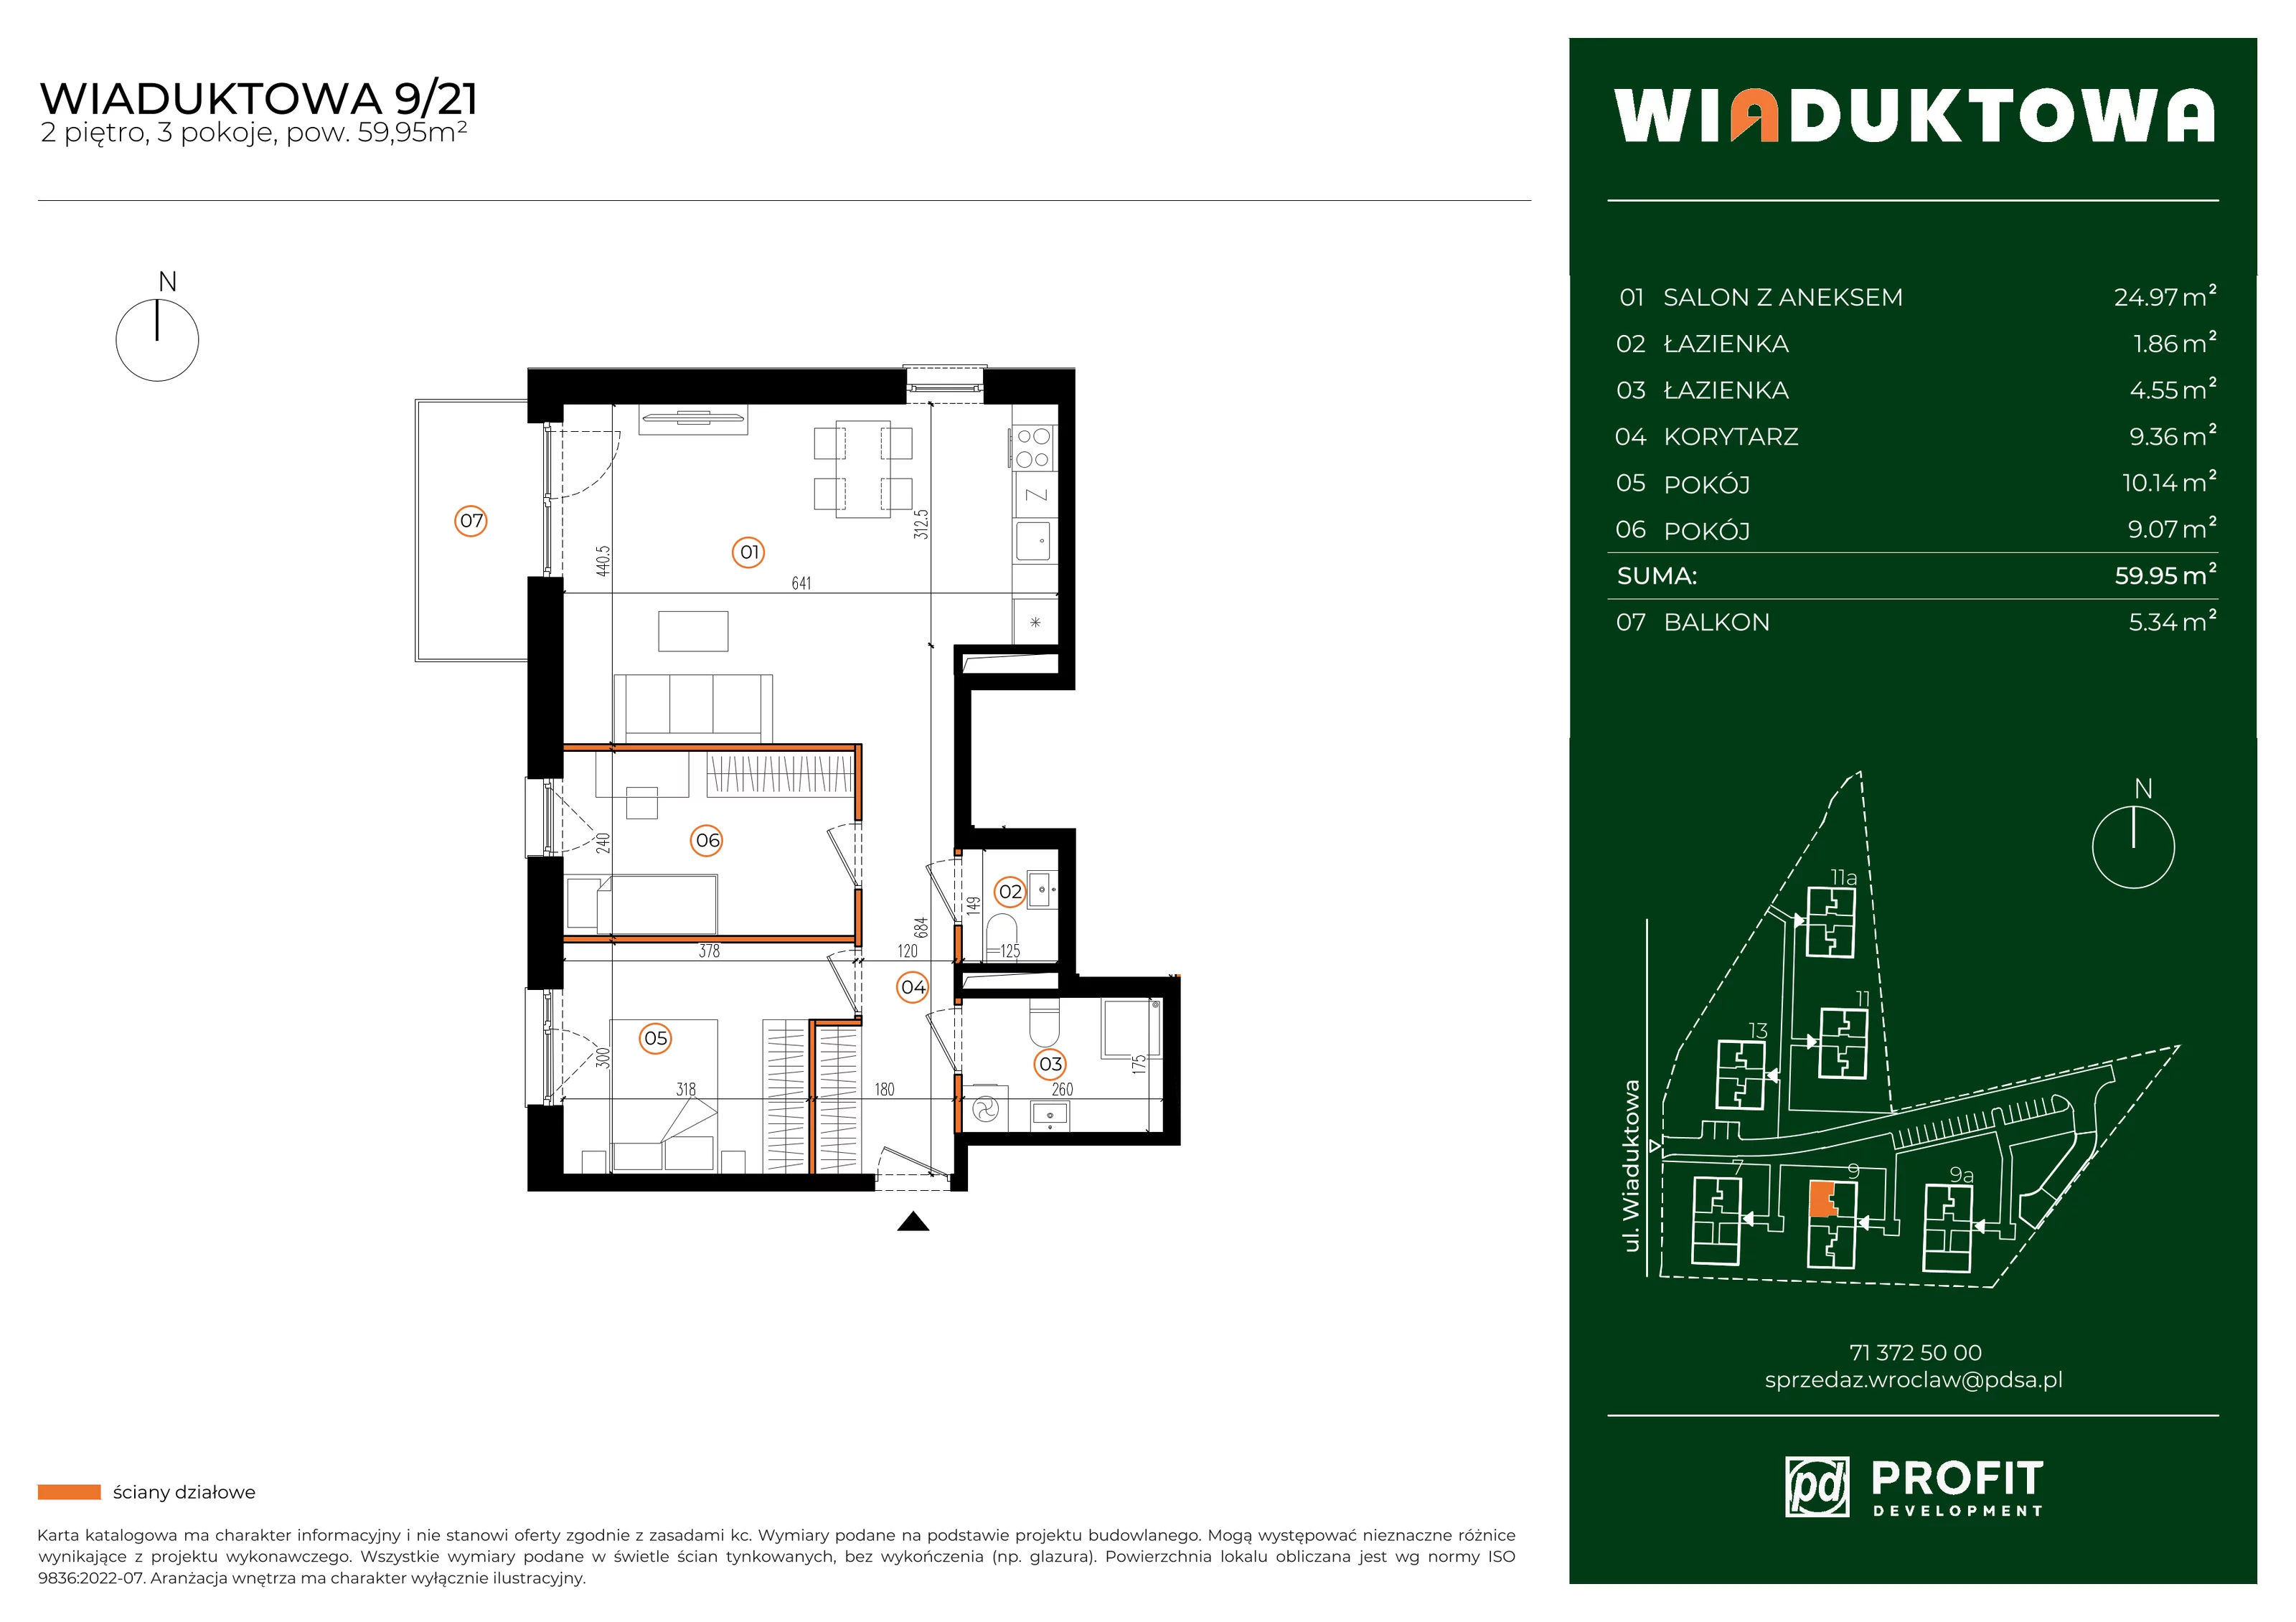 Mieszkanie 59,95 m², piętro 2, oferta nr WI/9/21, Wiaduktowa, Wrocław, Krzyki-Partynice, Krzyki, ul. Wiaduktowa